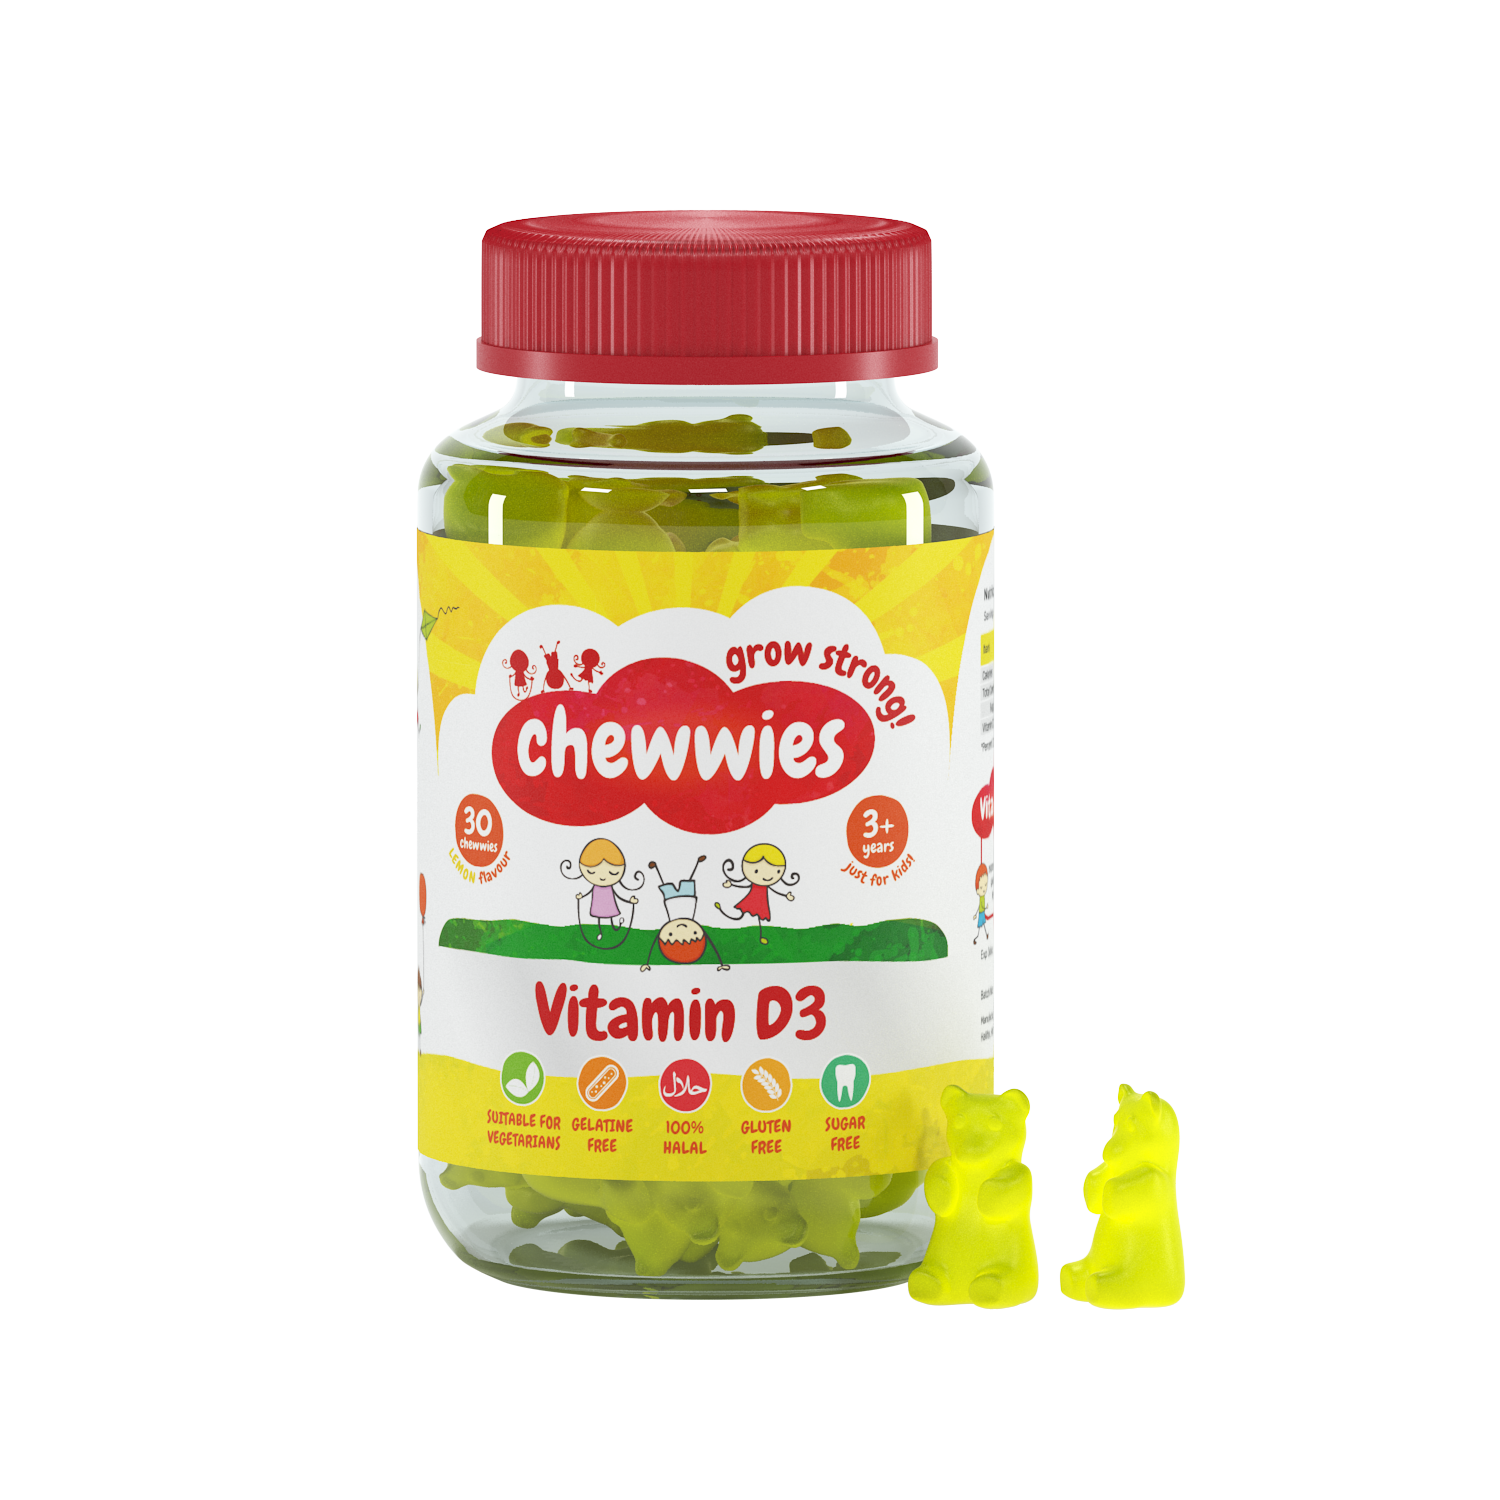 Chewwies Vitamin D3, 30 gomitas veganas sin azúcar con extractos de cítricos para apoyar un crecimiento y desarrollo saludables.